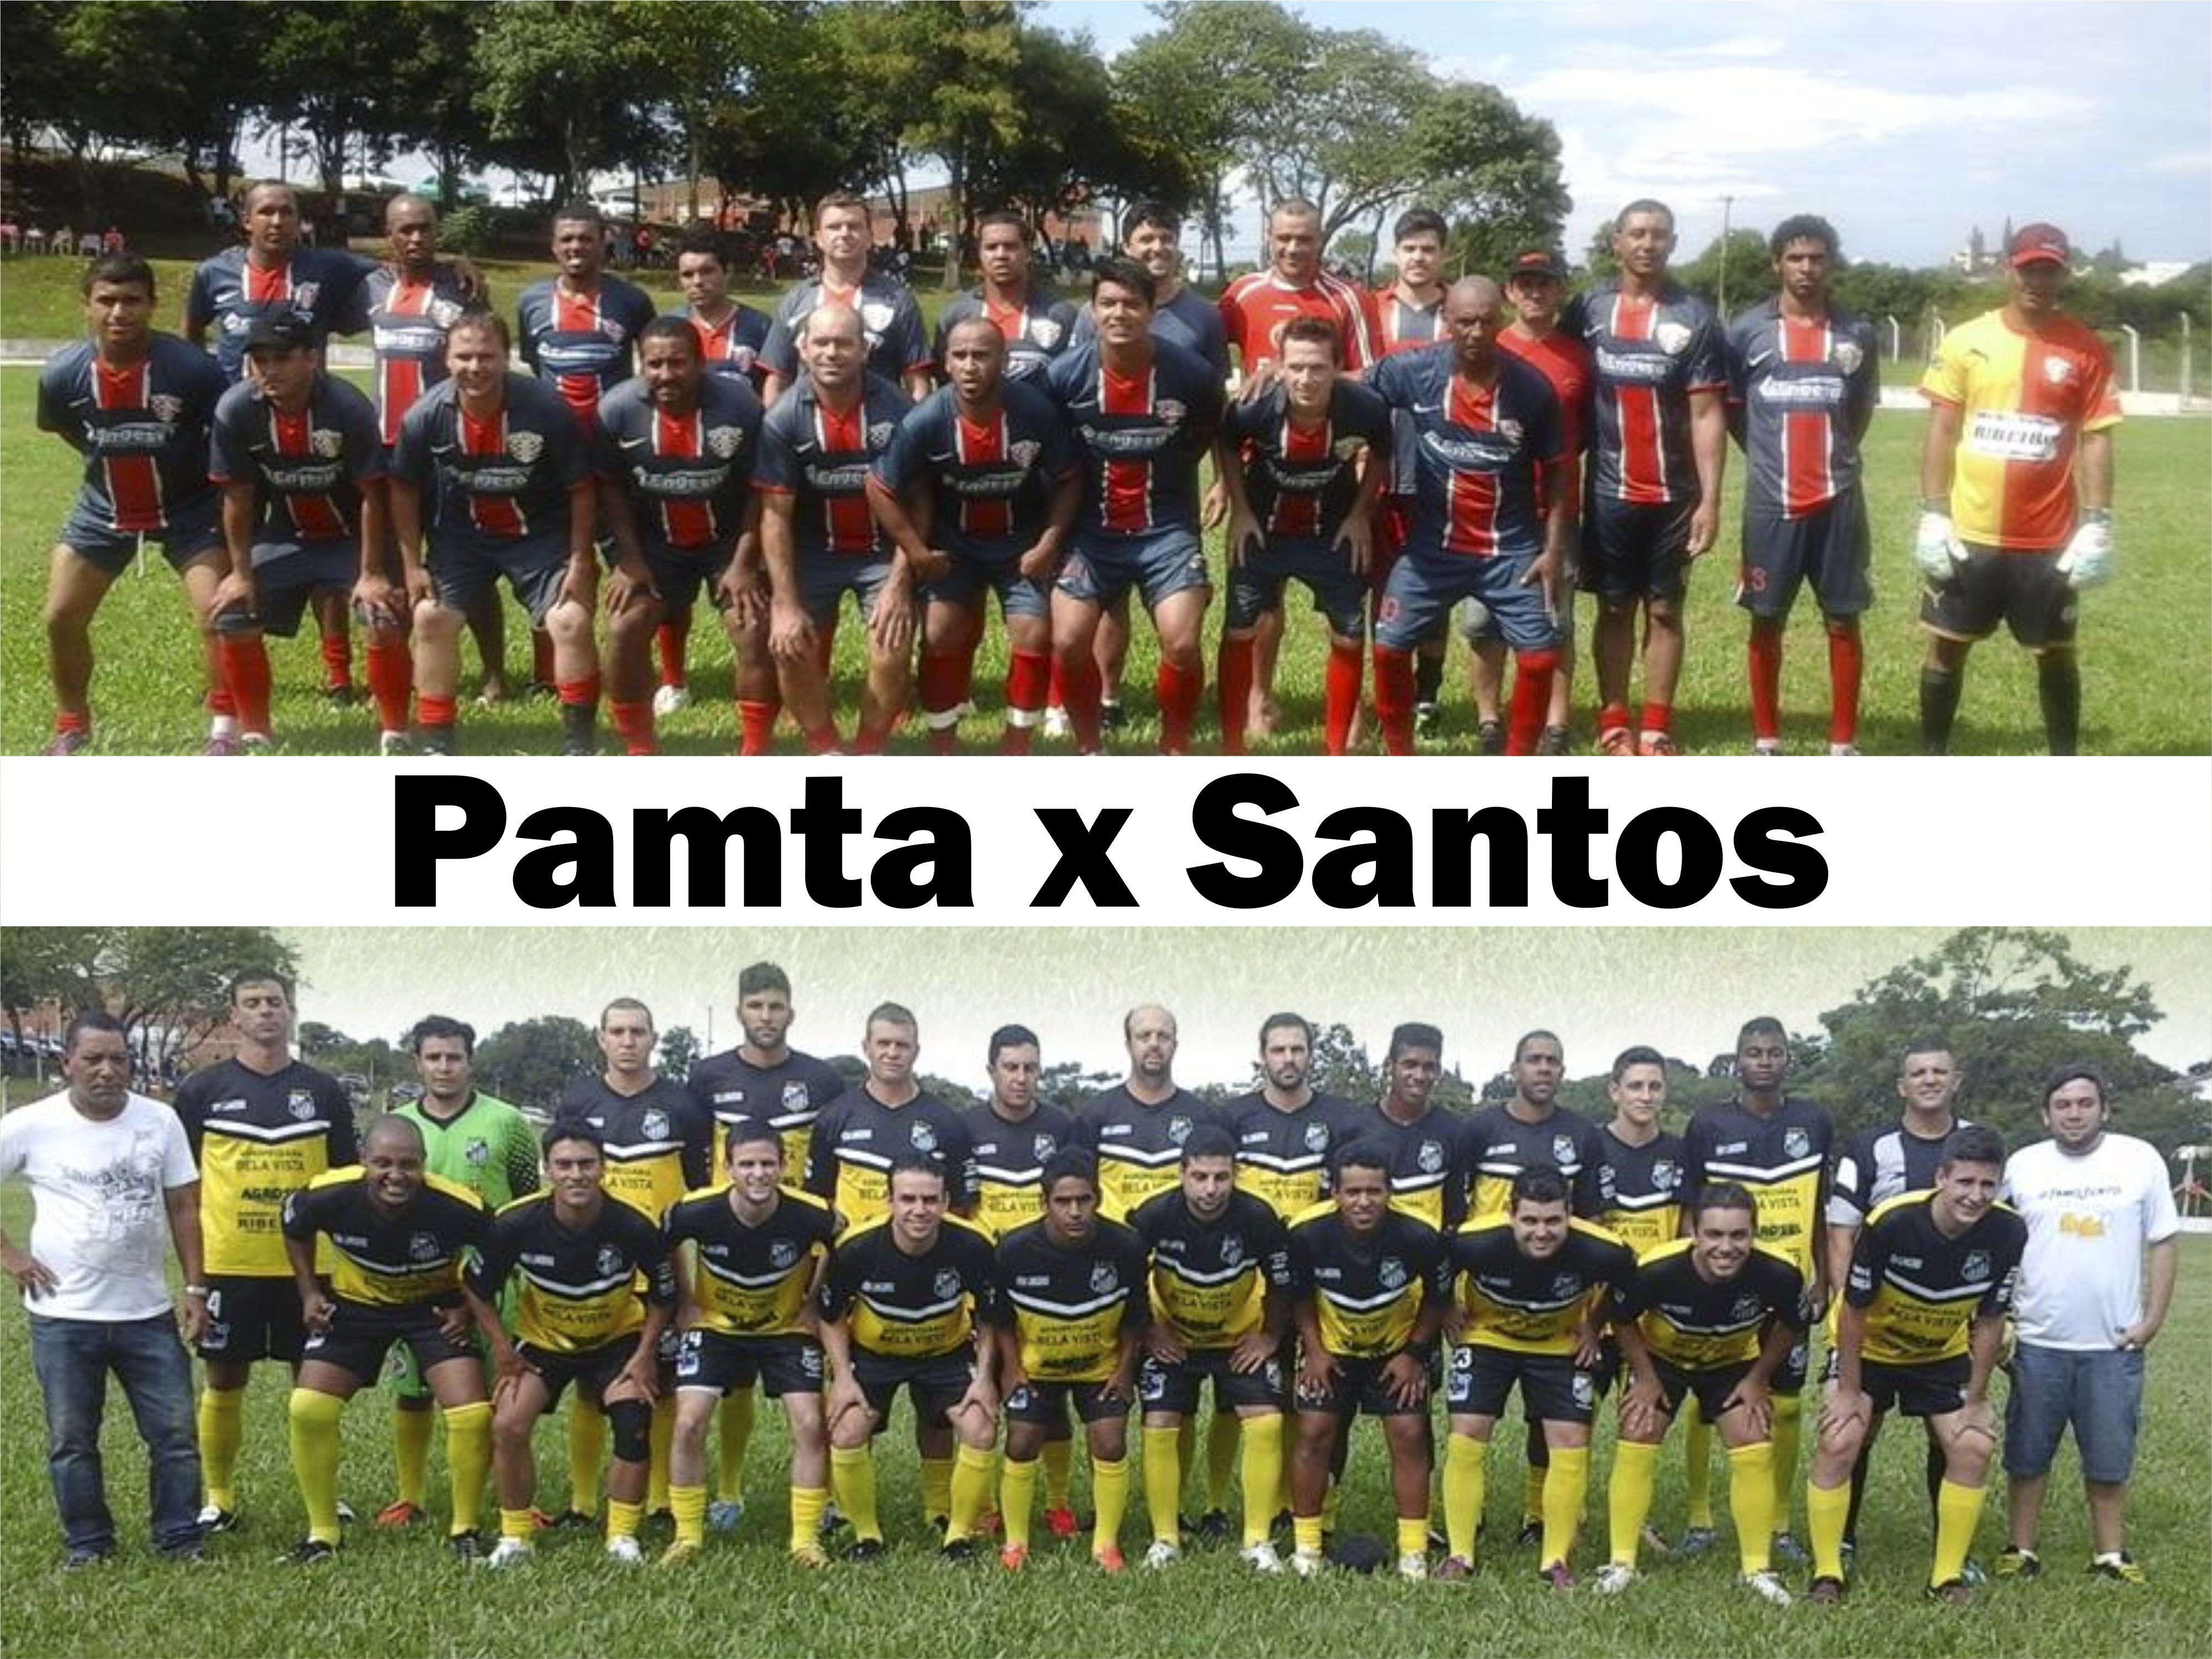 Pamta e Santos são os finalistas do futebol de campo